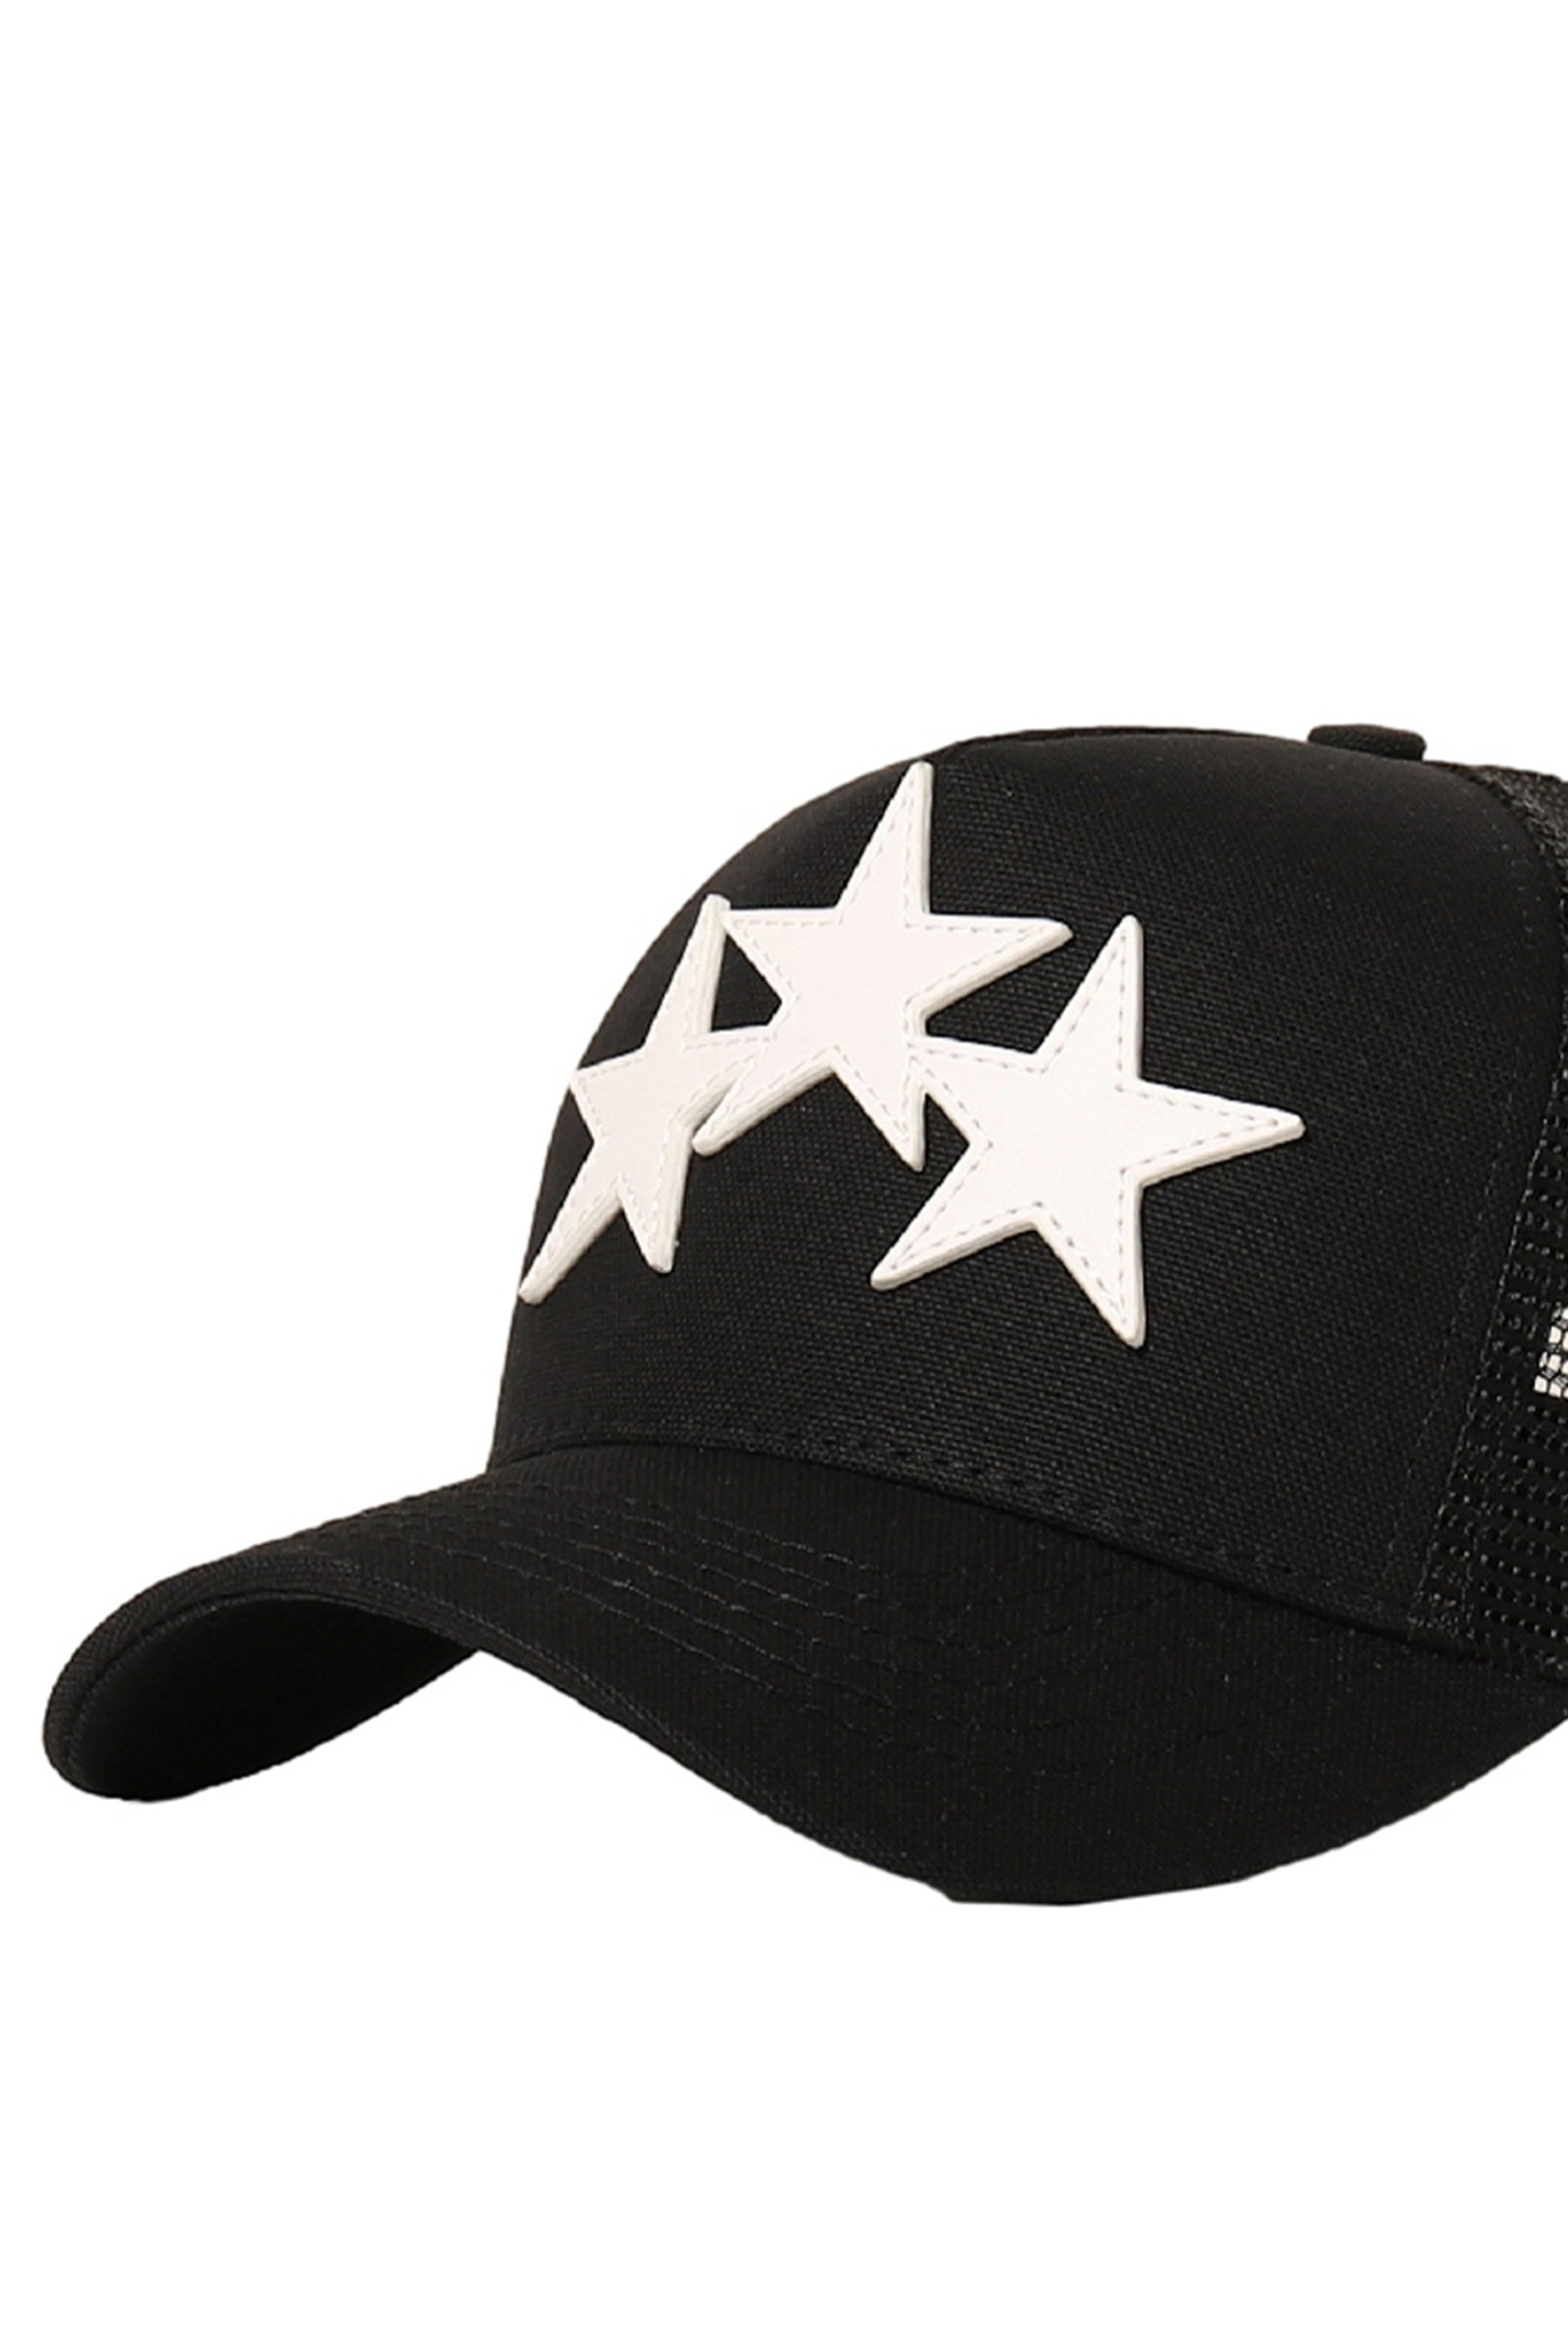 3 STAR TRUCKER HAT / BLK WHT